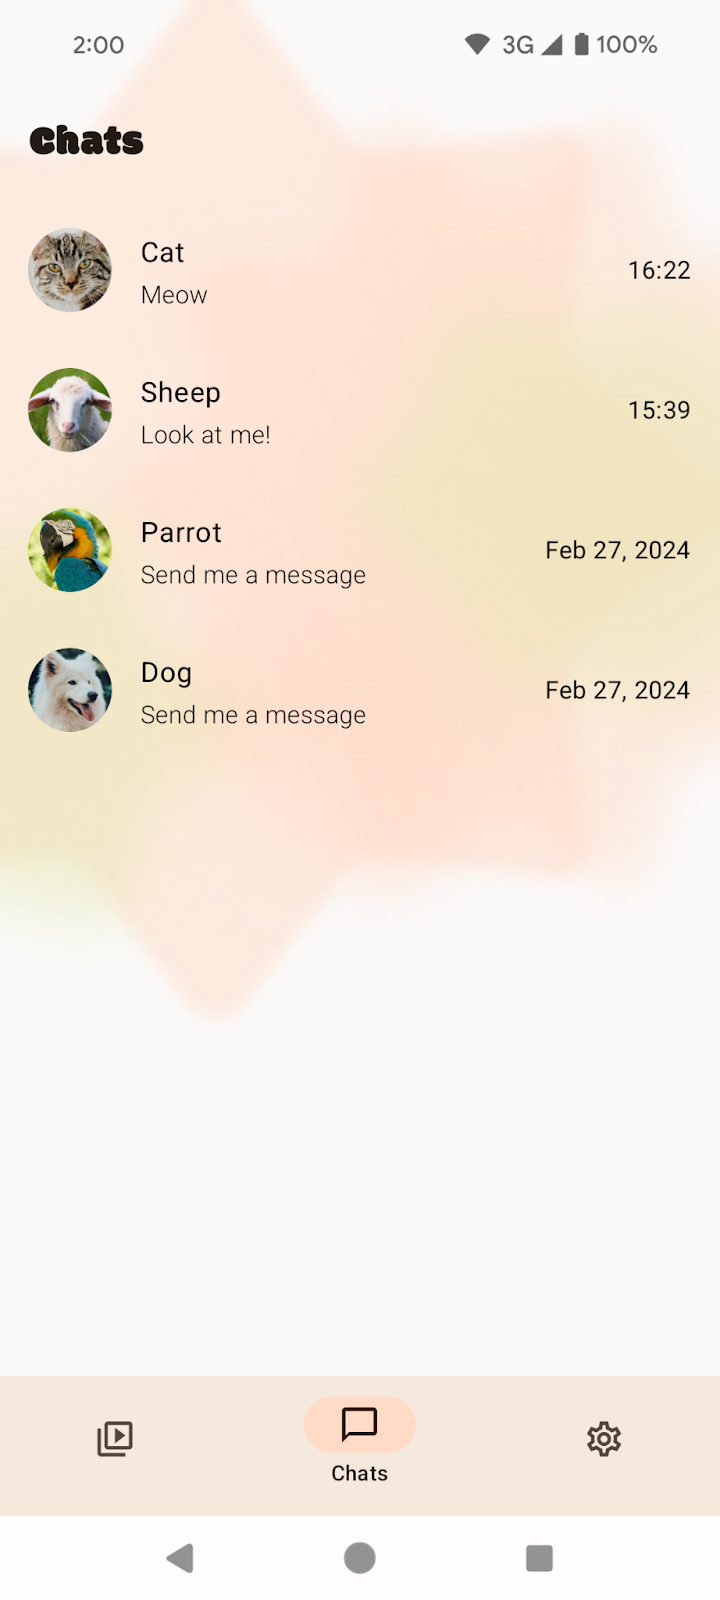 三按鈕操作模式下的「Chats」畫面。